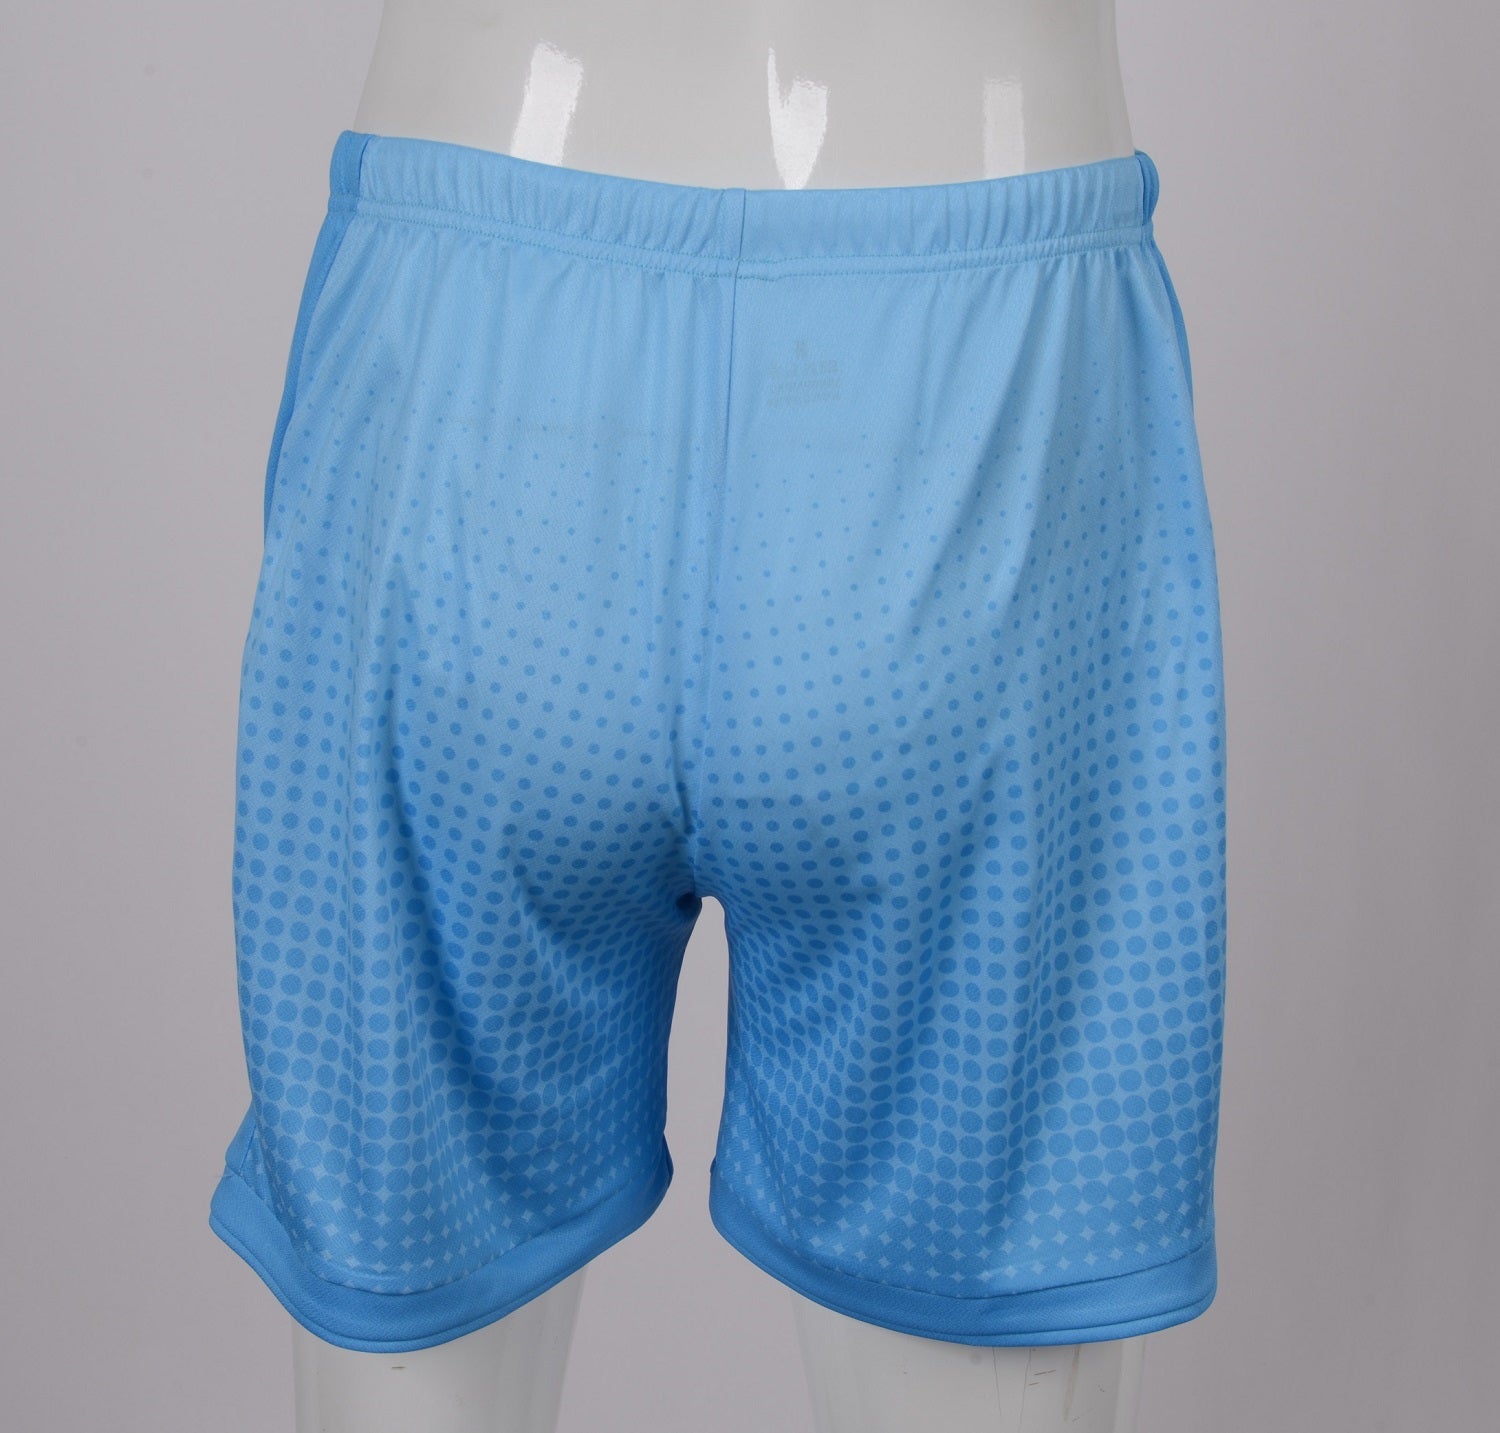 Custom Running shorts